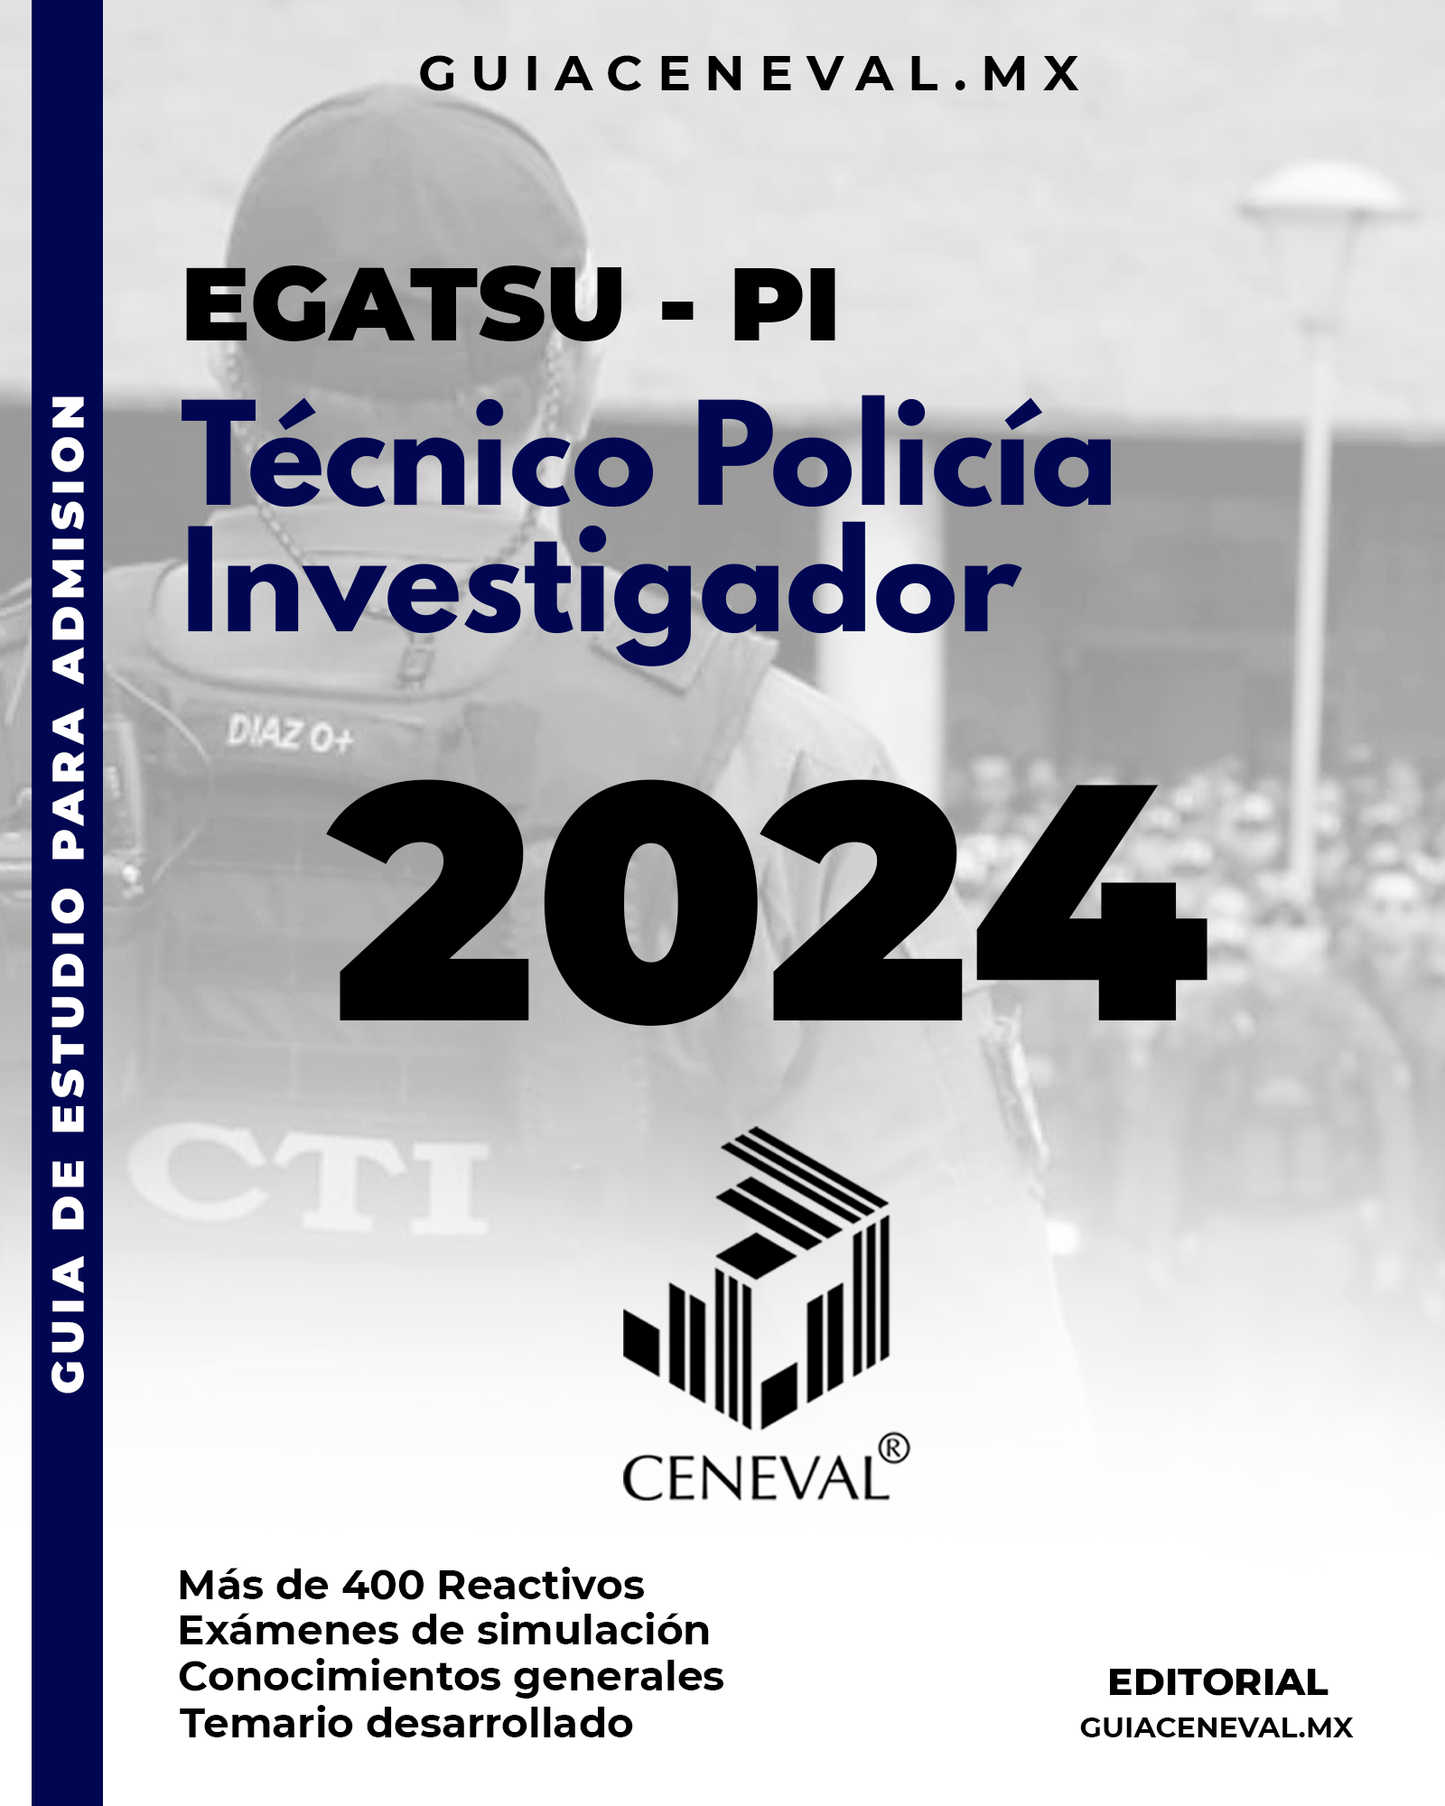 Guía Ceneval EGATSU - PI Técnico Policía Investigador